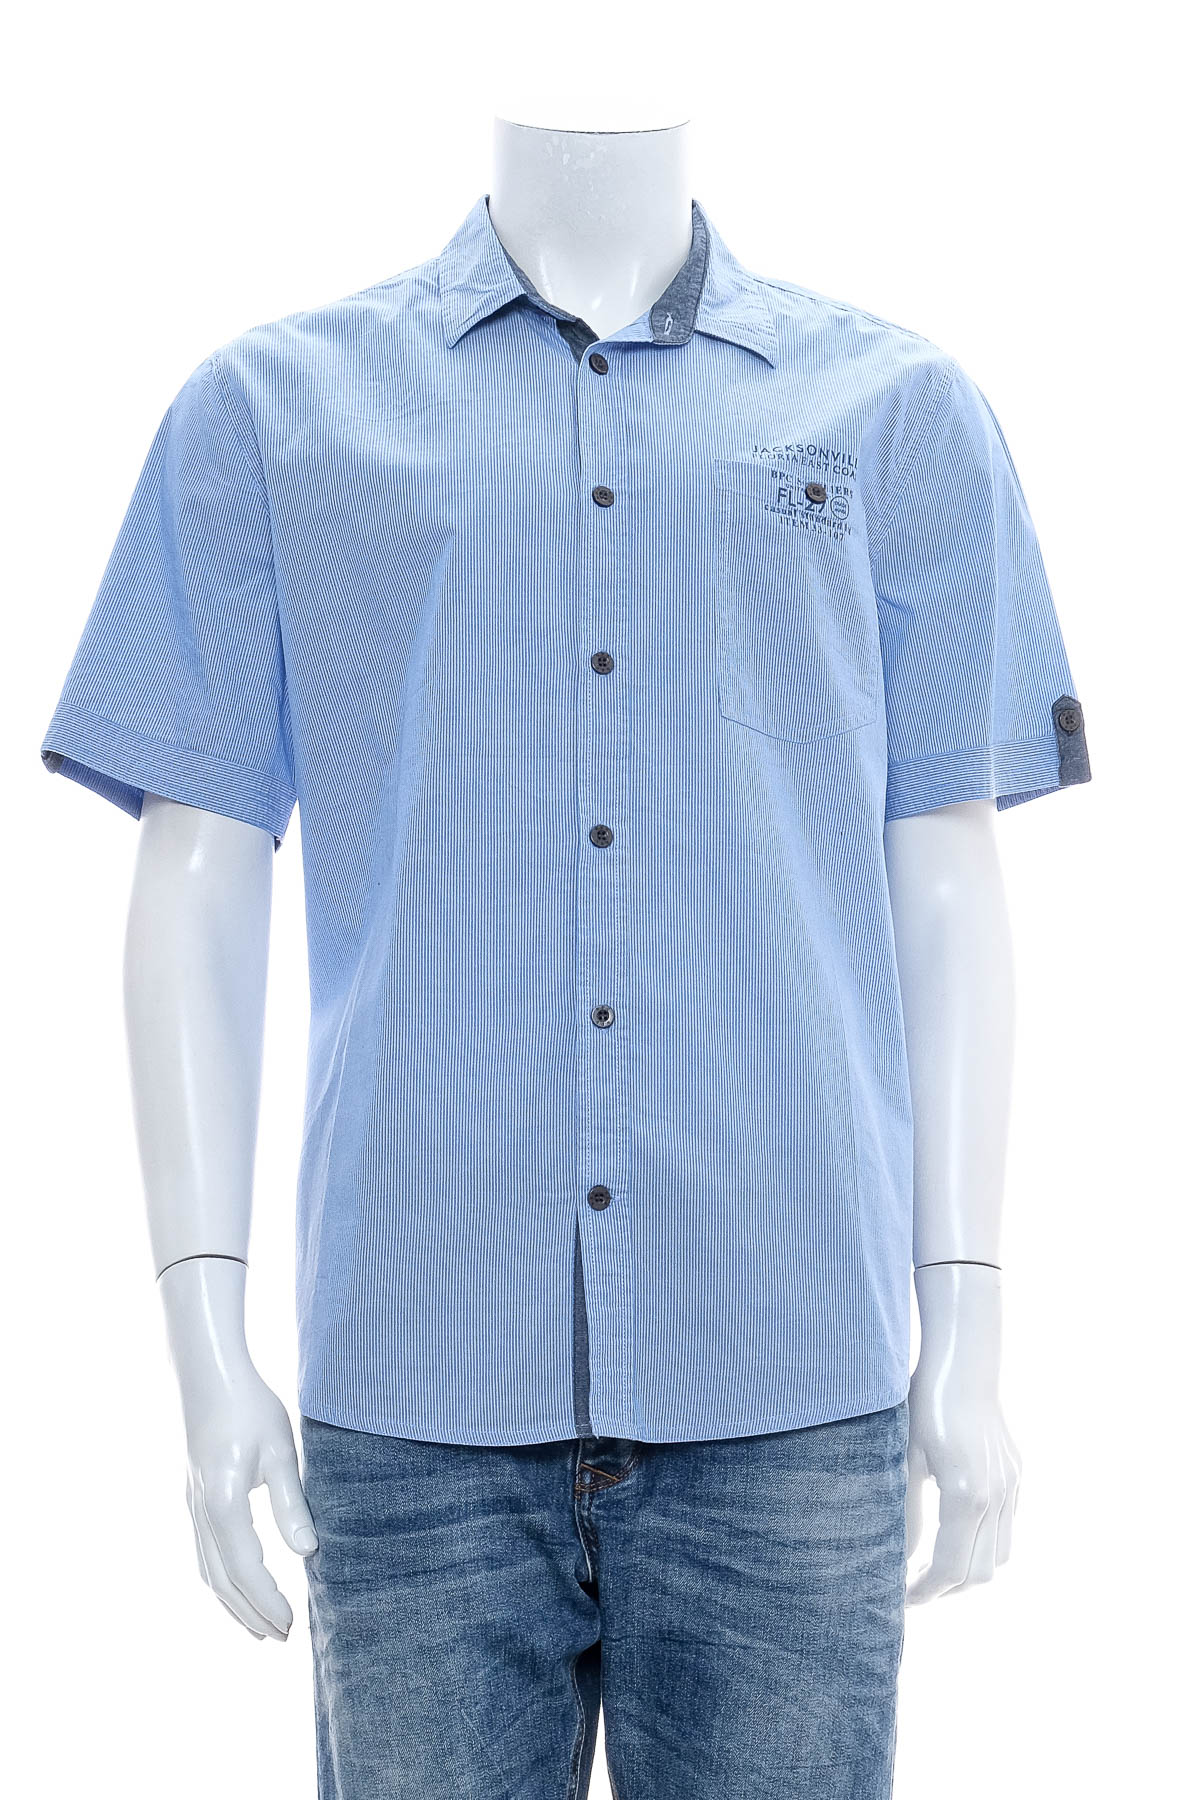 Ανδρικό πουκάμισο - Bpc Bonprix Collection - 0